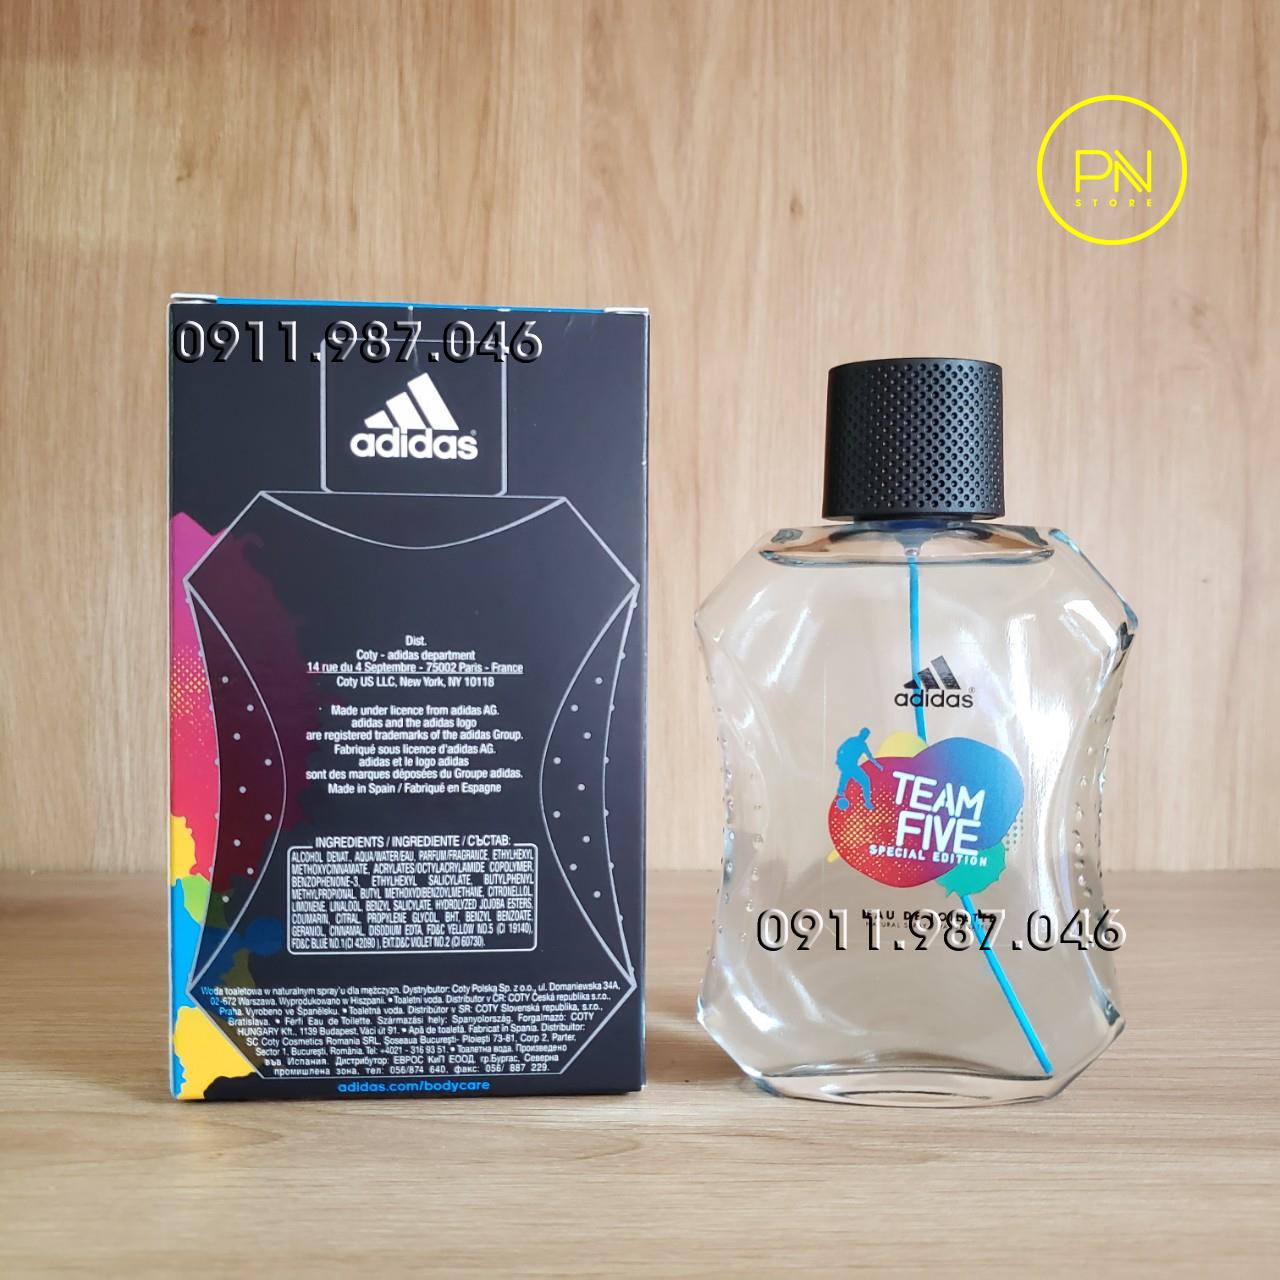 Nước hoa nam Adidas Team Five Special Edition EDT 100ml chính hãng - PN102046